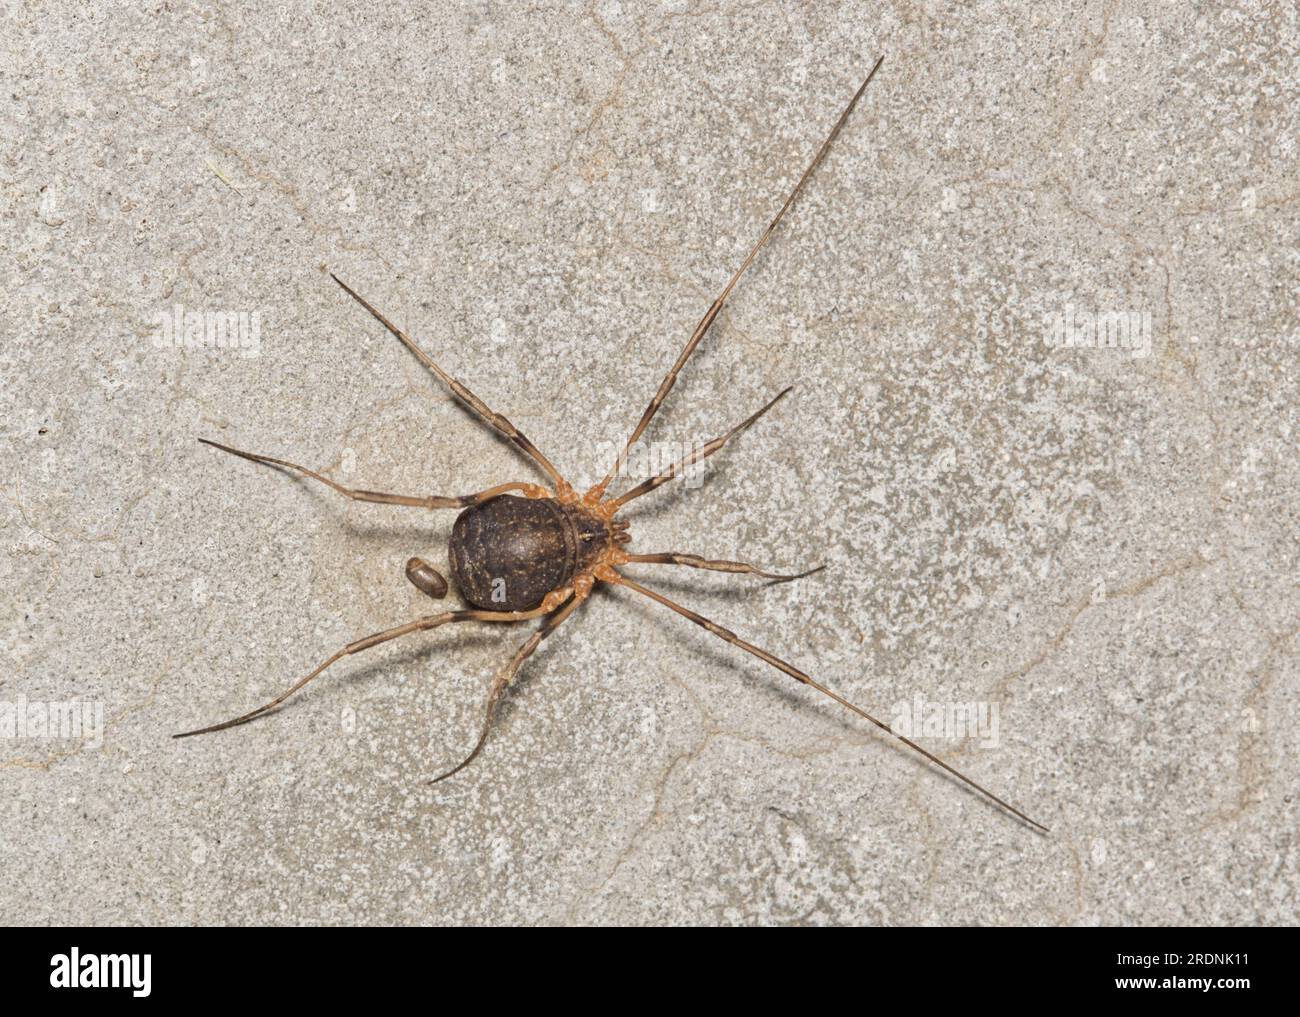 Harvestmen Spider (Protolophus) dell'ordine tassonomico Opiliones su una superficie di cemento a Houston, Texas. Immagine macro vista dorsale. Foto Stock